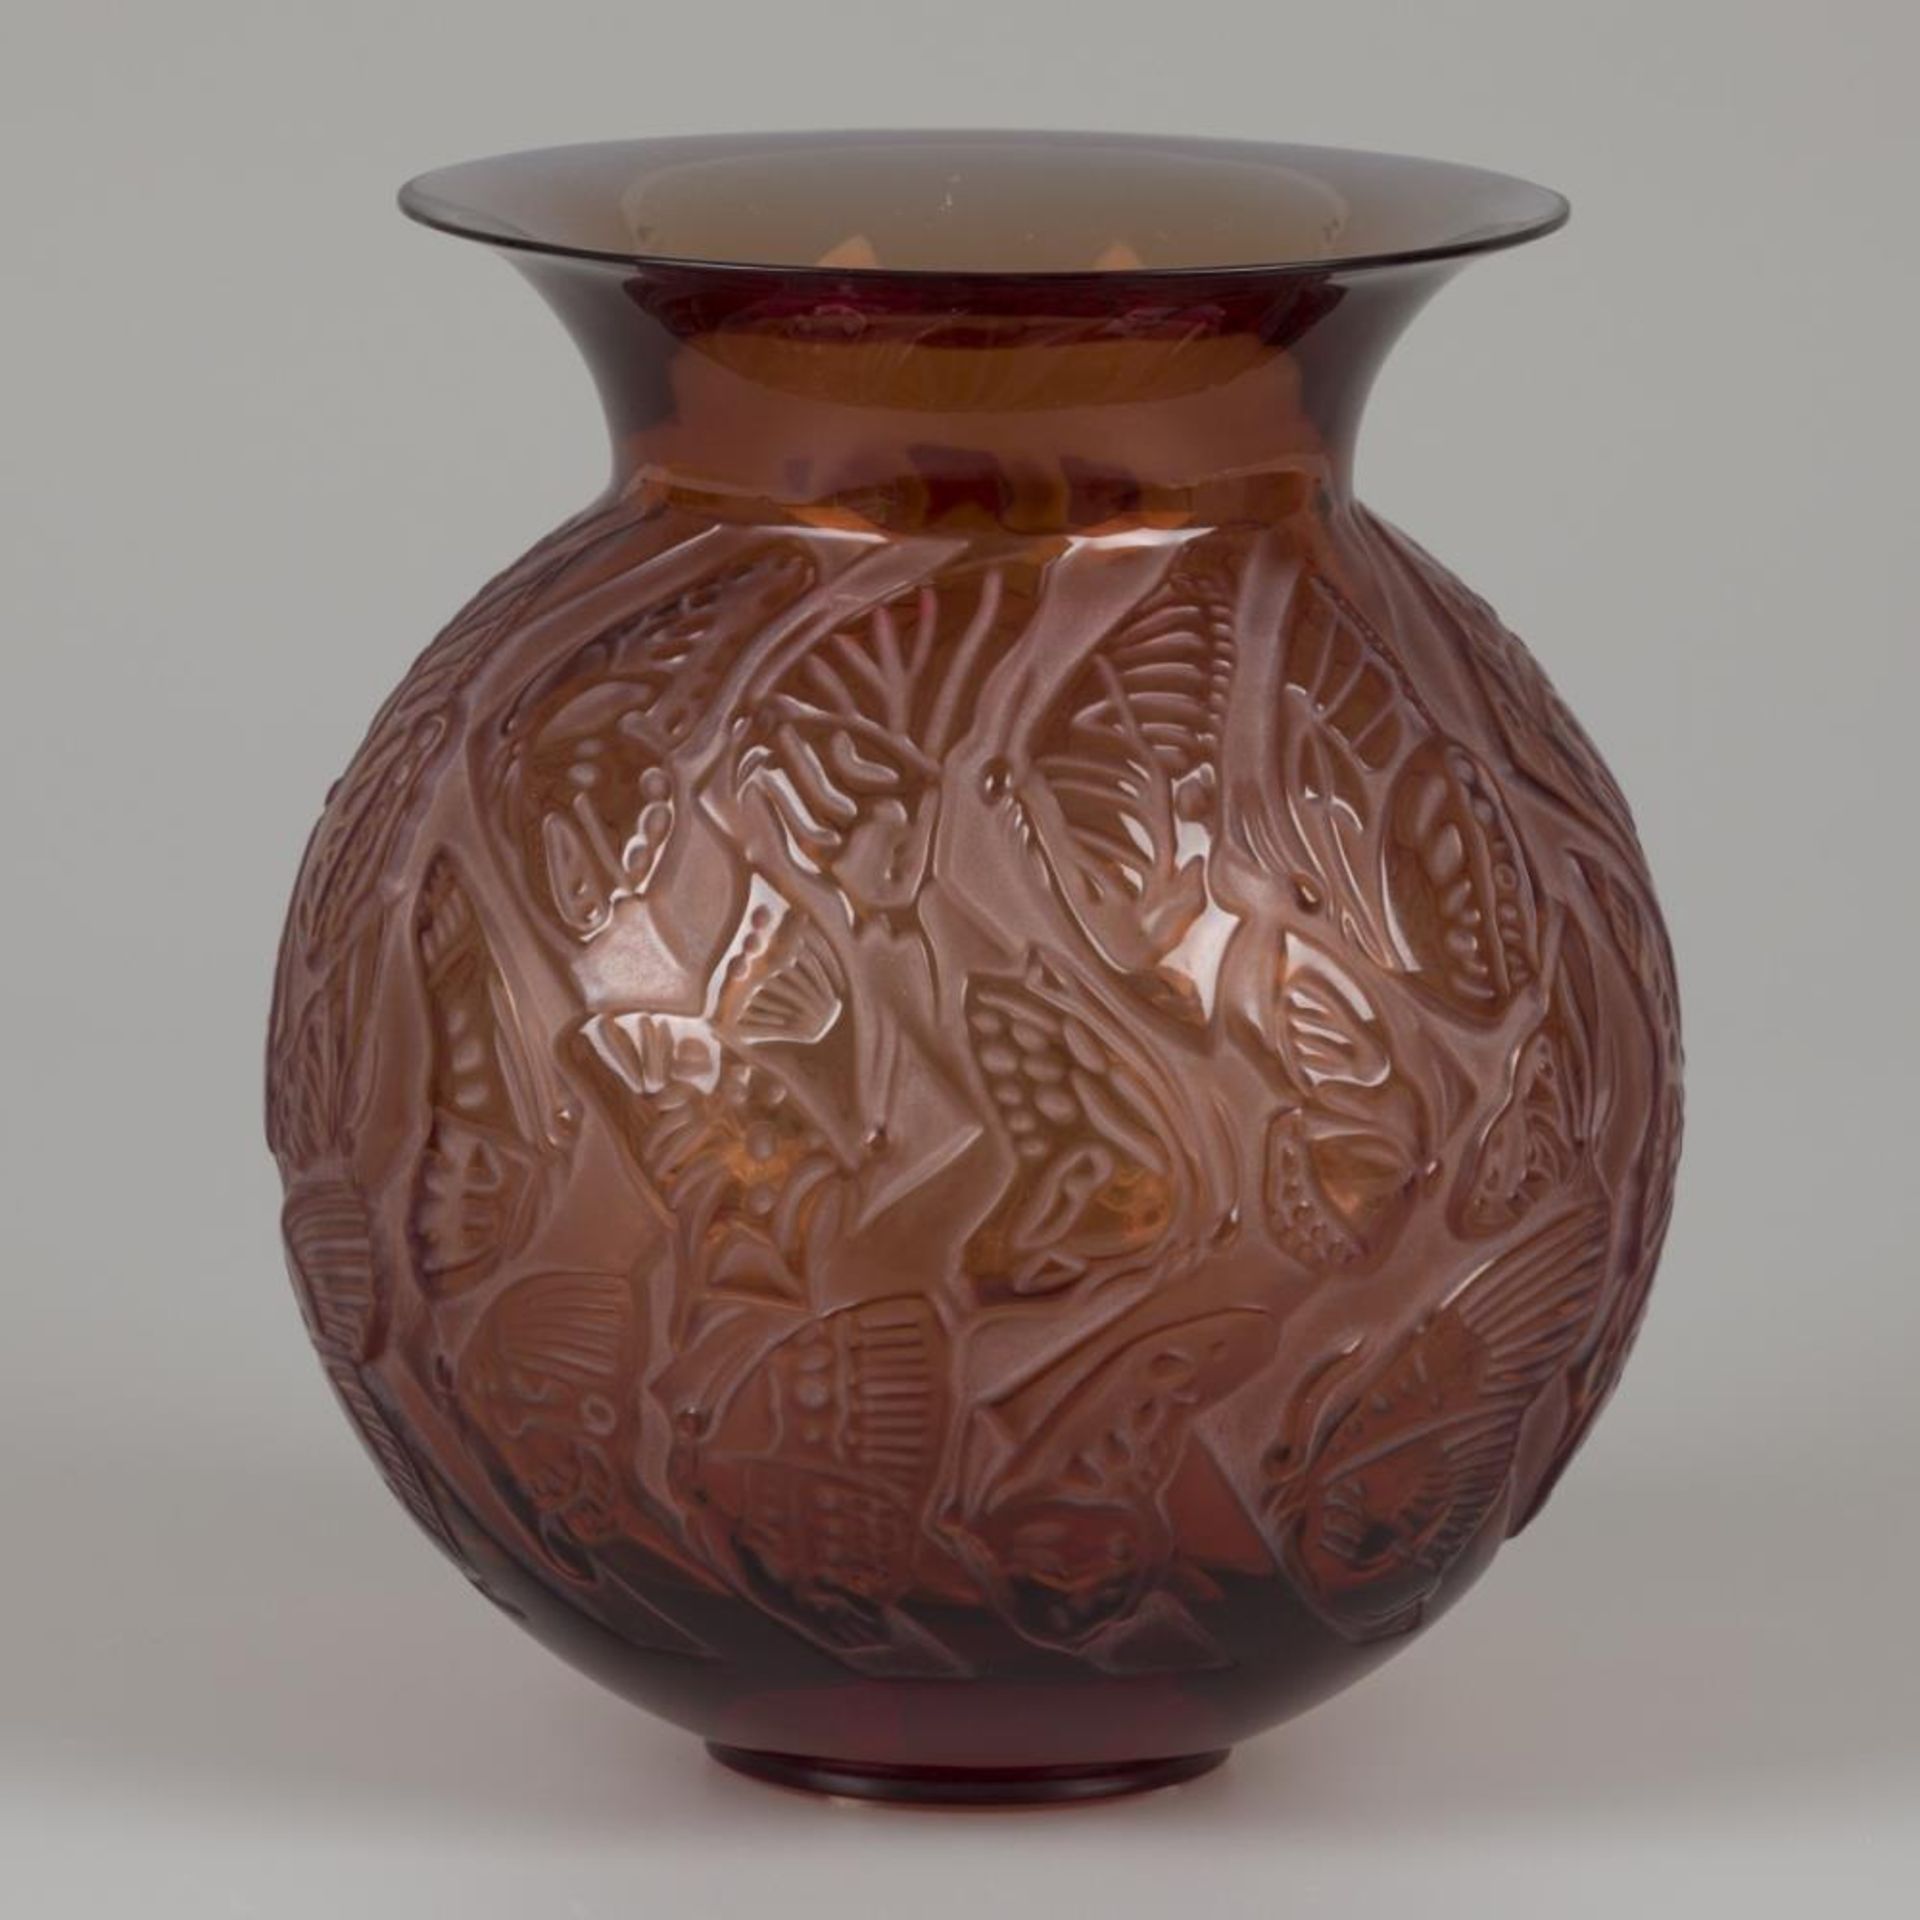 A Lalique "Nymphale" -vase, marked "Lalique France".